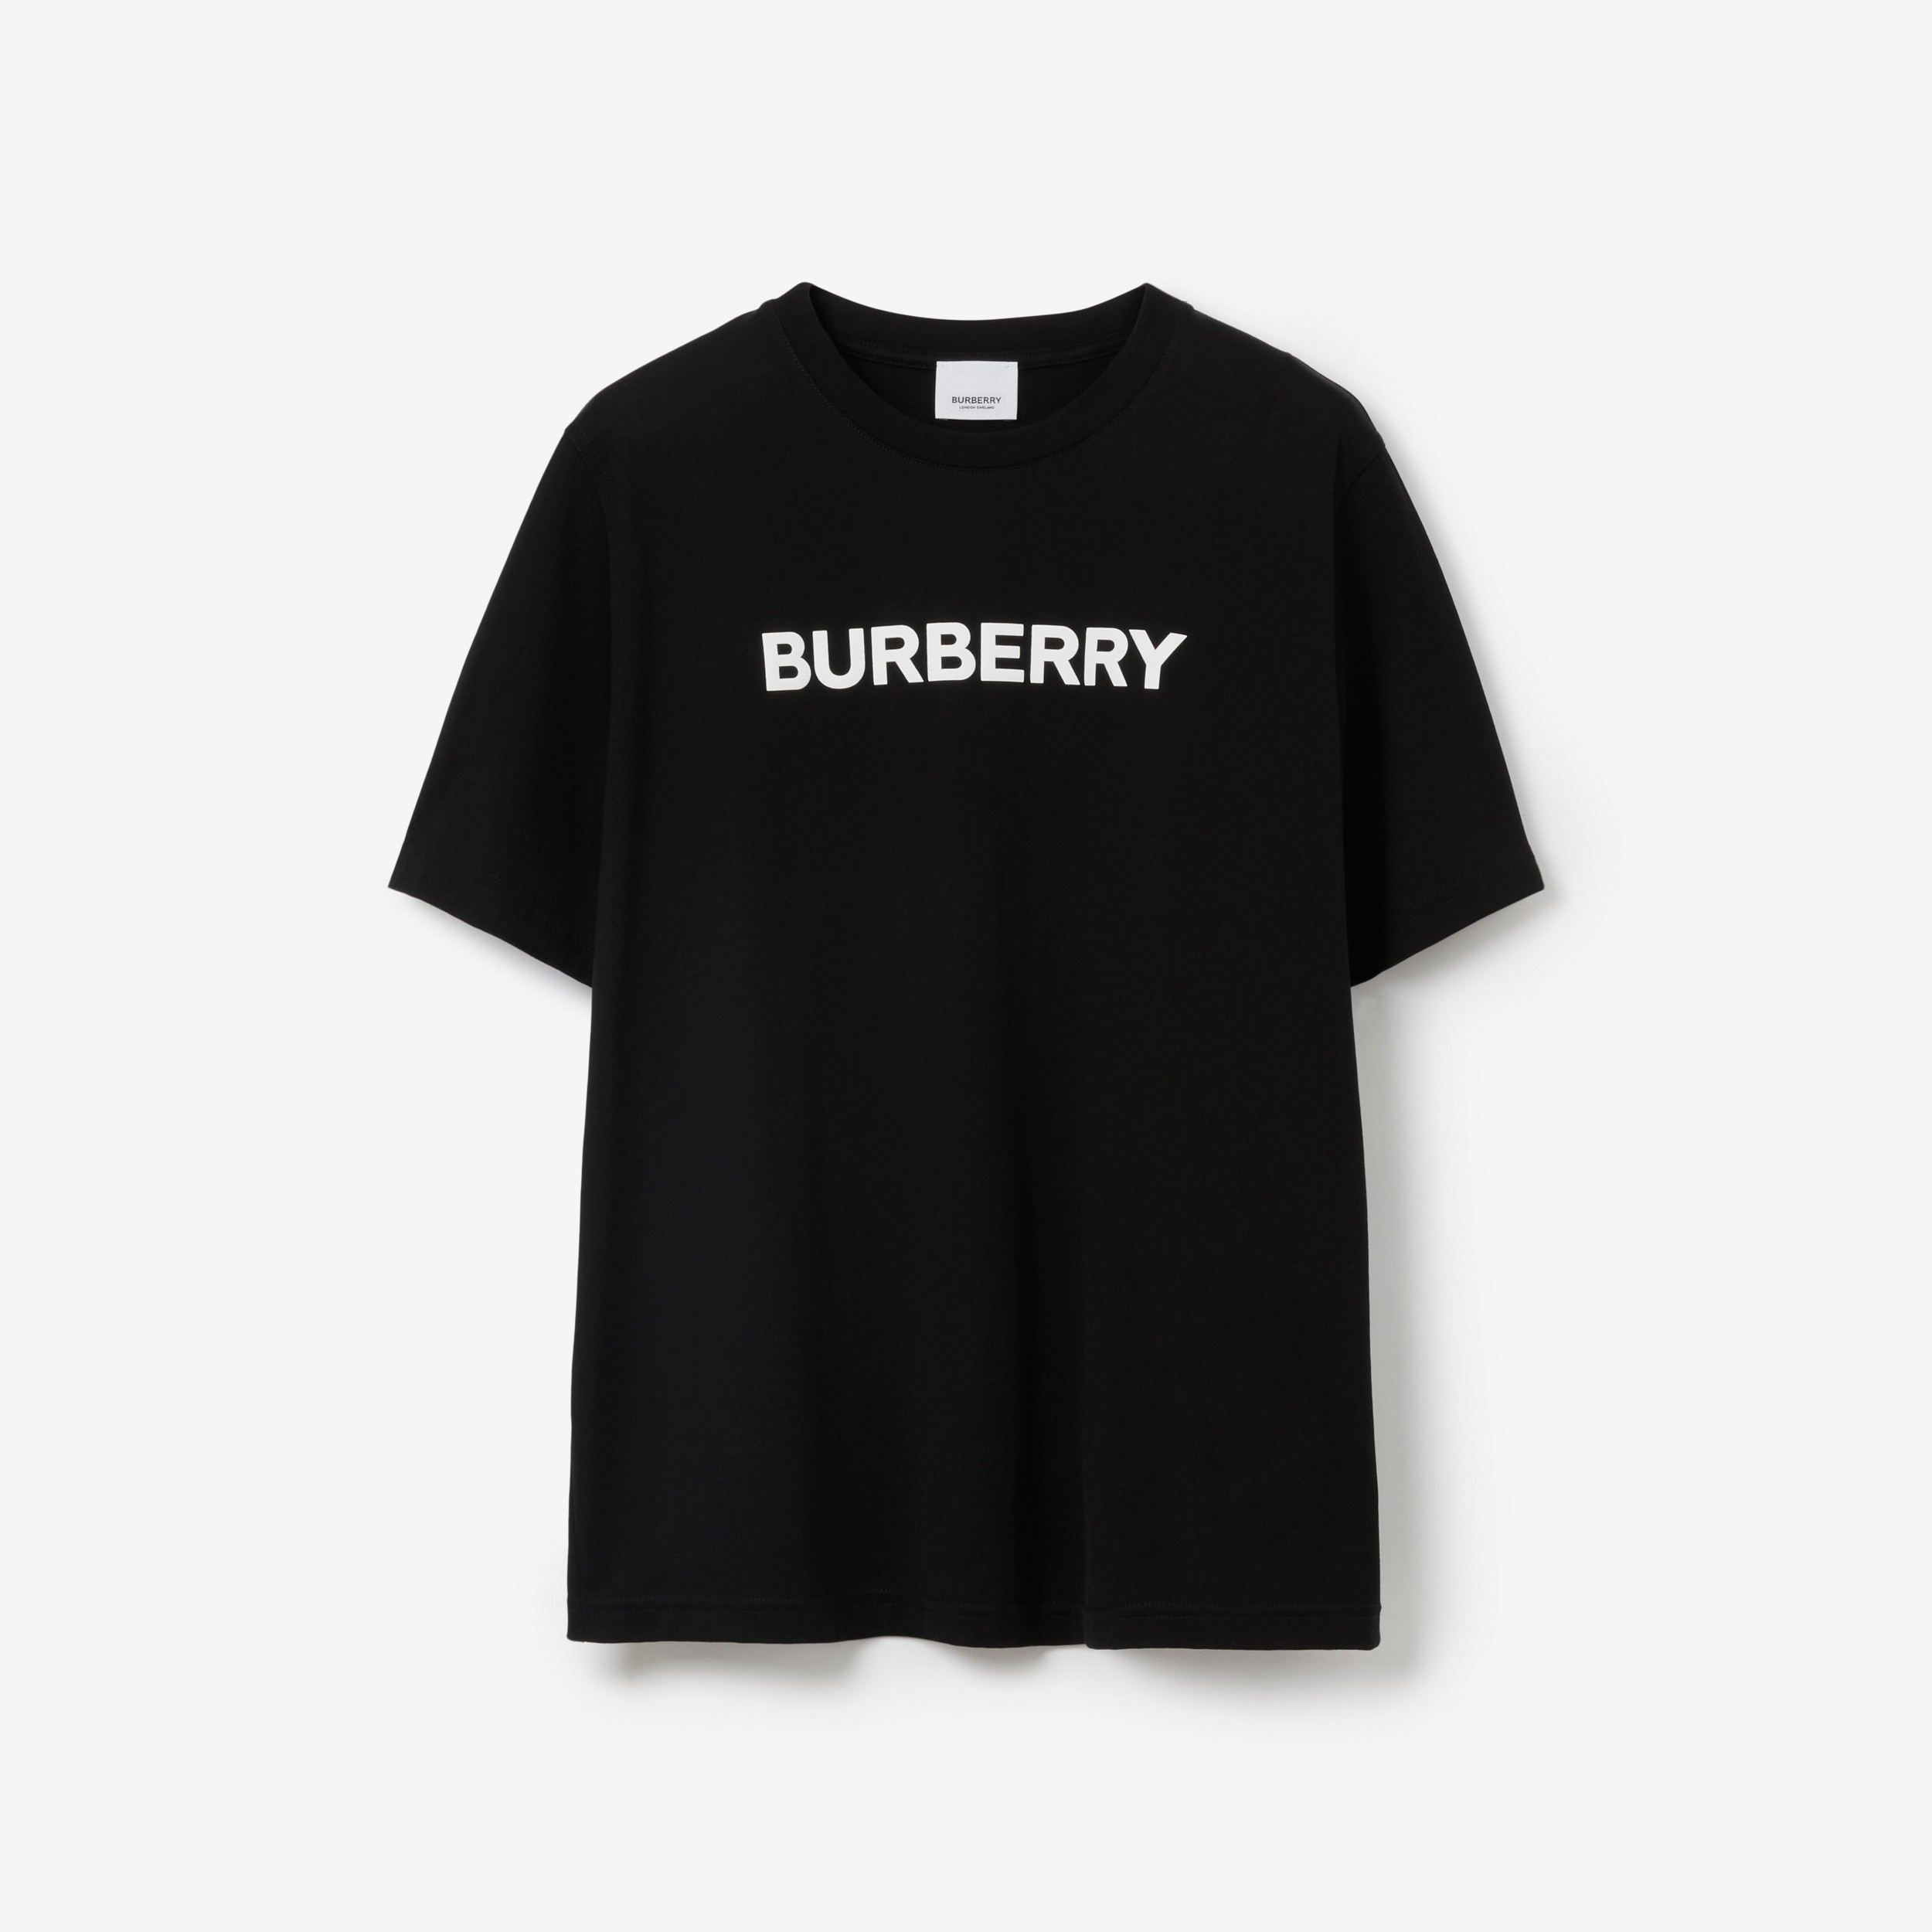 販売終了モデル新品タグ付きBurberryロゴプリントコットンTシャツ-